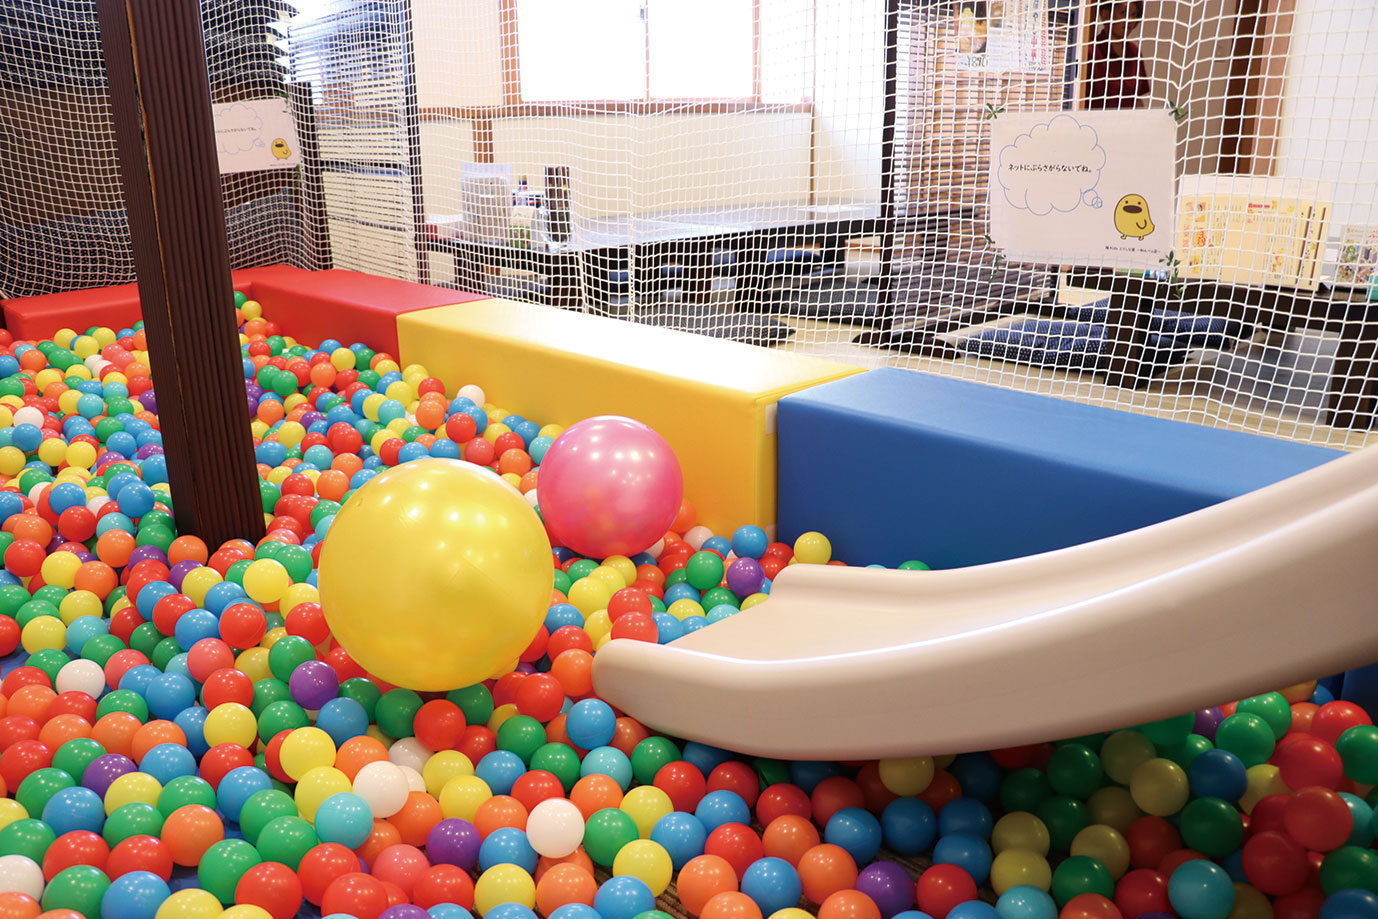 大広間のkidsスペース（6歳以下対象）にはなんとボールプールが。絵本やおもちゃといった定番アイテムの用意もあります